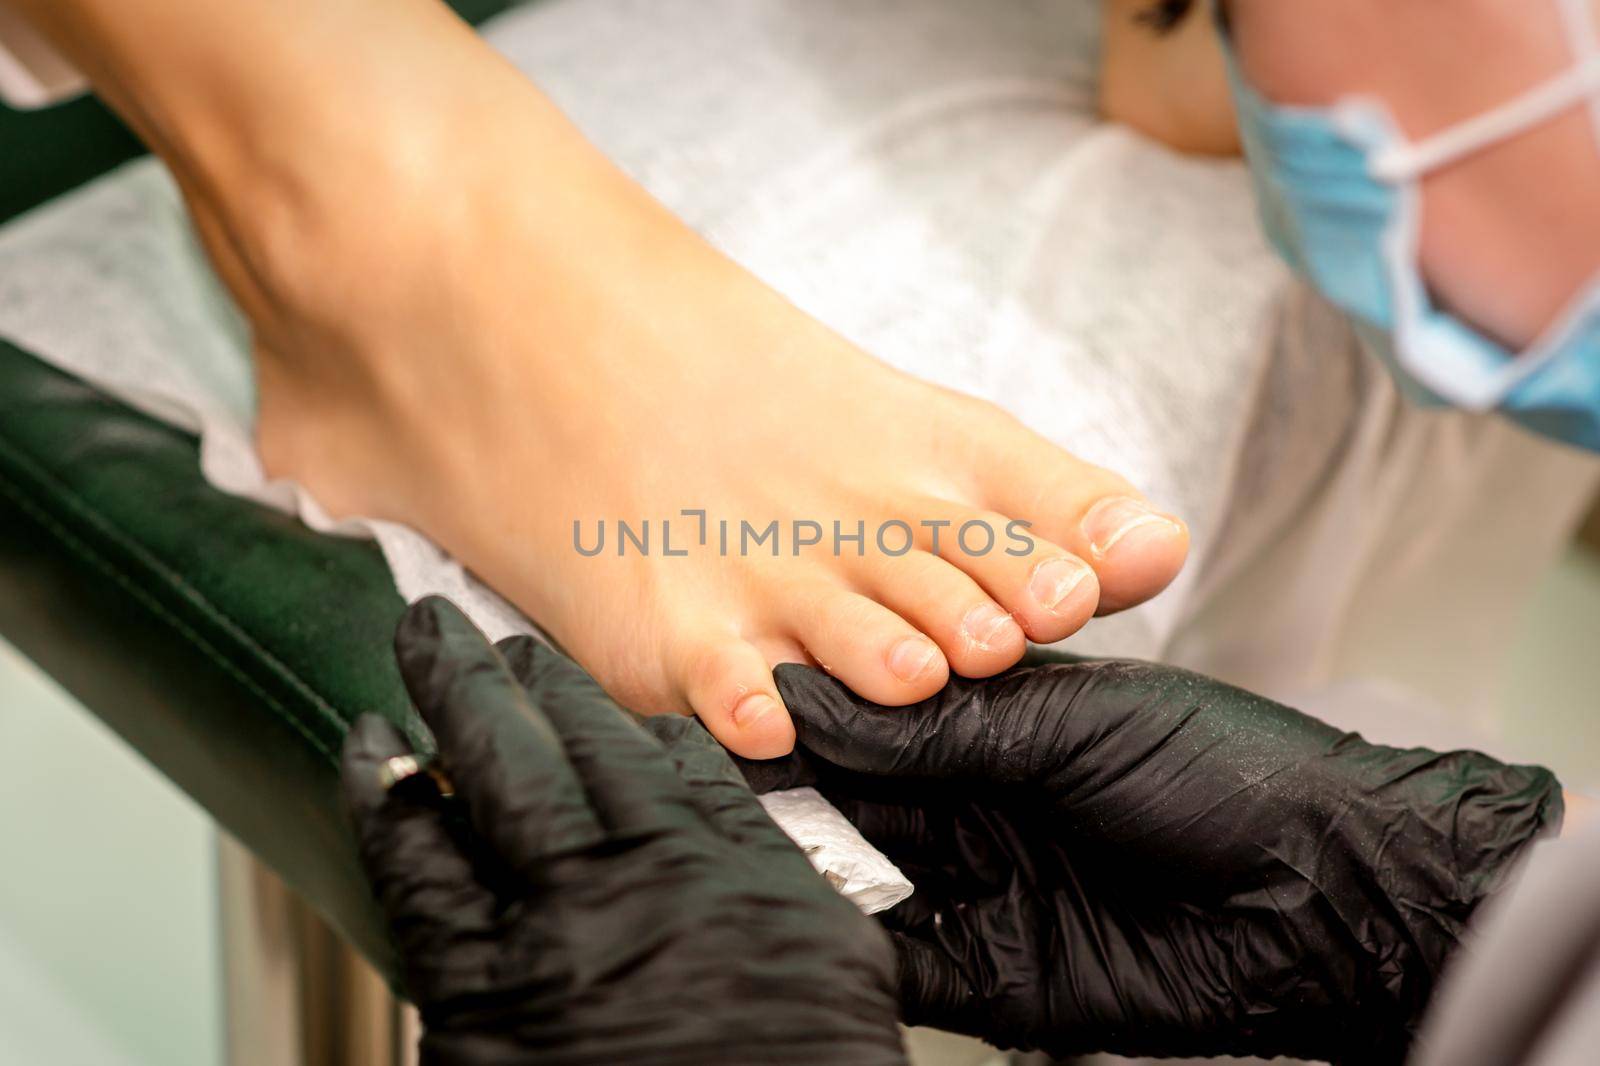 The podiatry doctor examines the toenails on the female foot. by okskukuruza